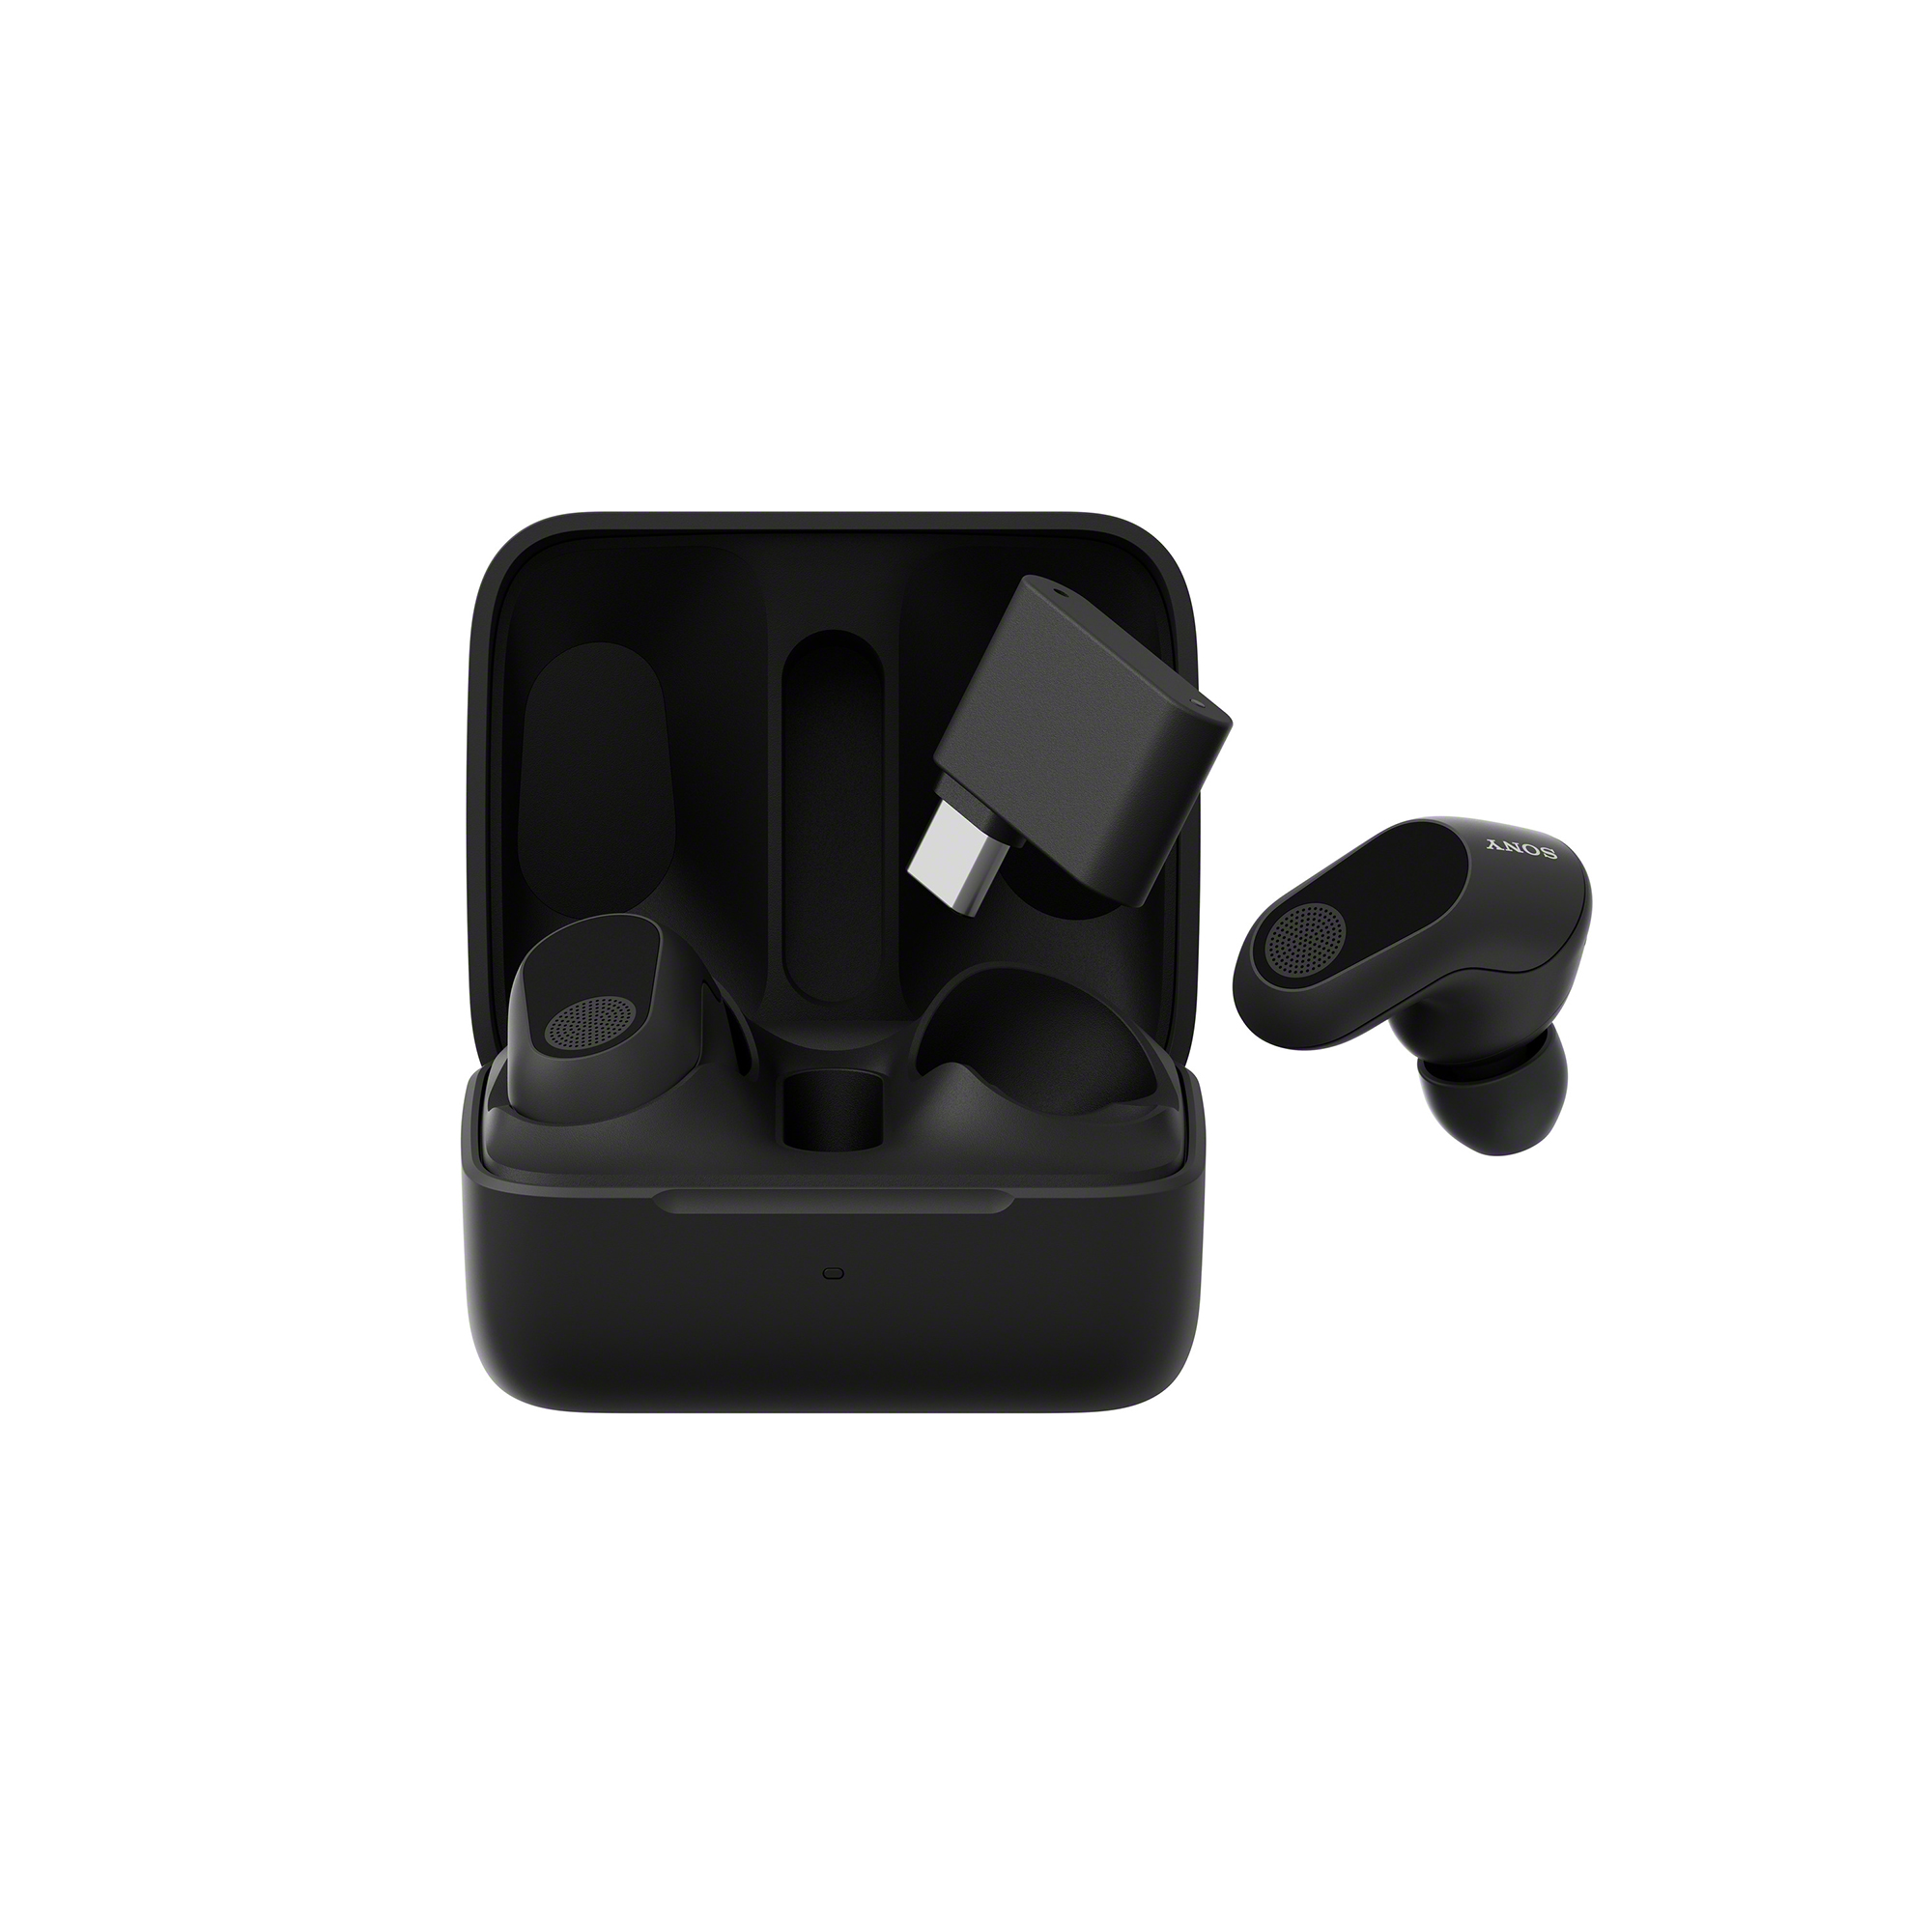 打開的黑色 INZONE Buds 耳機充電盒圖片，一個耳機和收發器漂浮在盒子上方